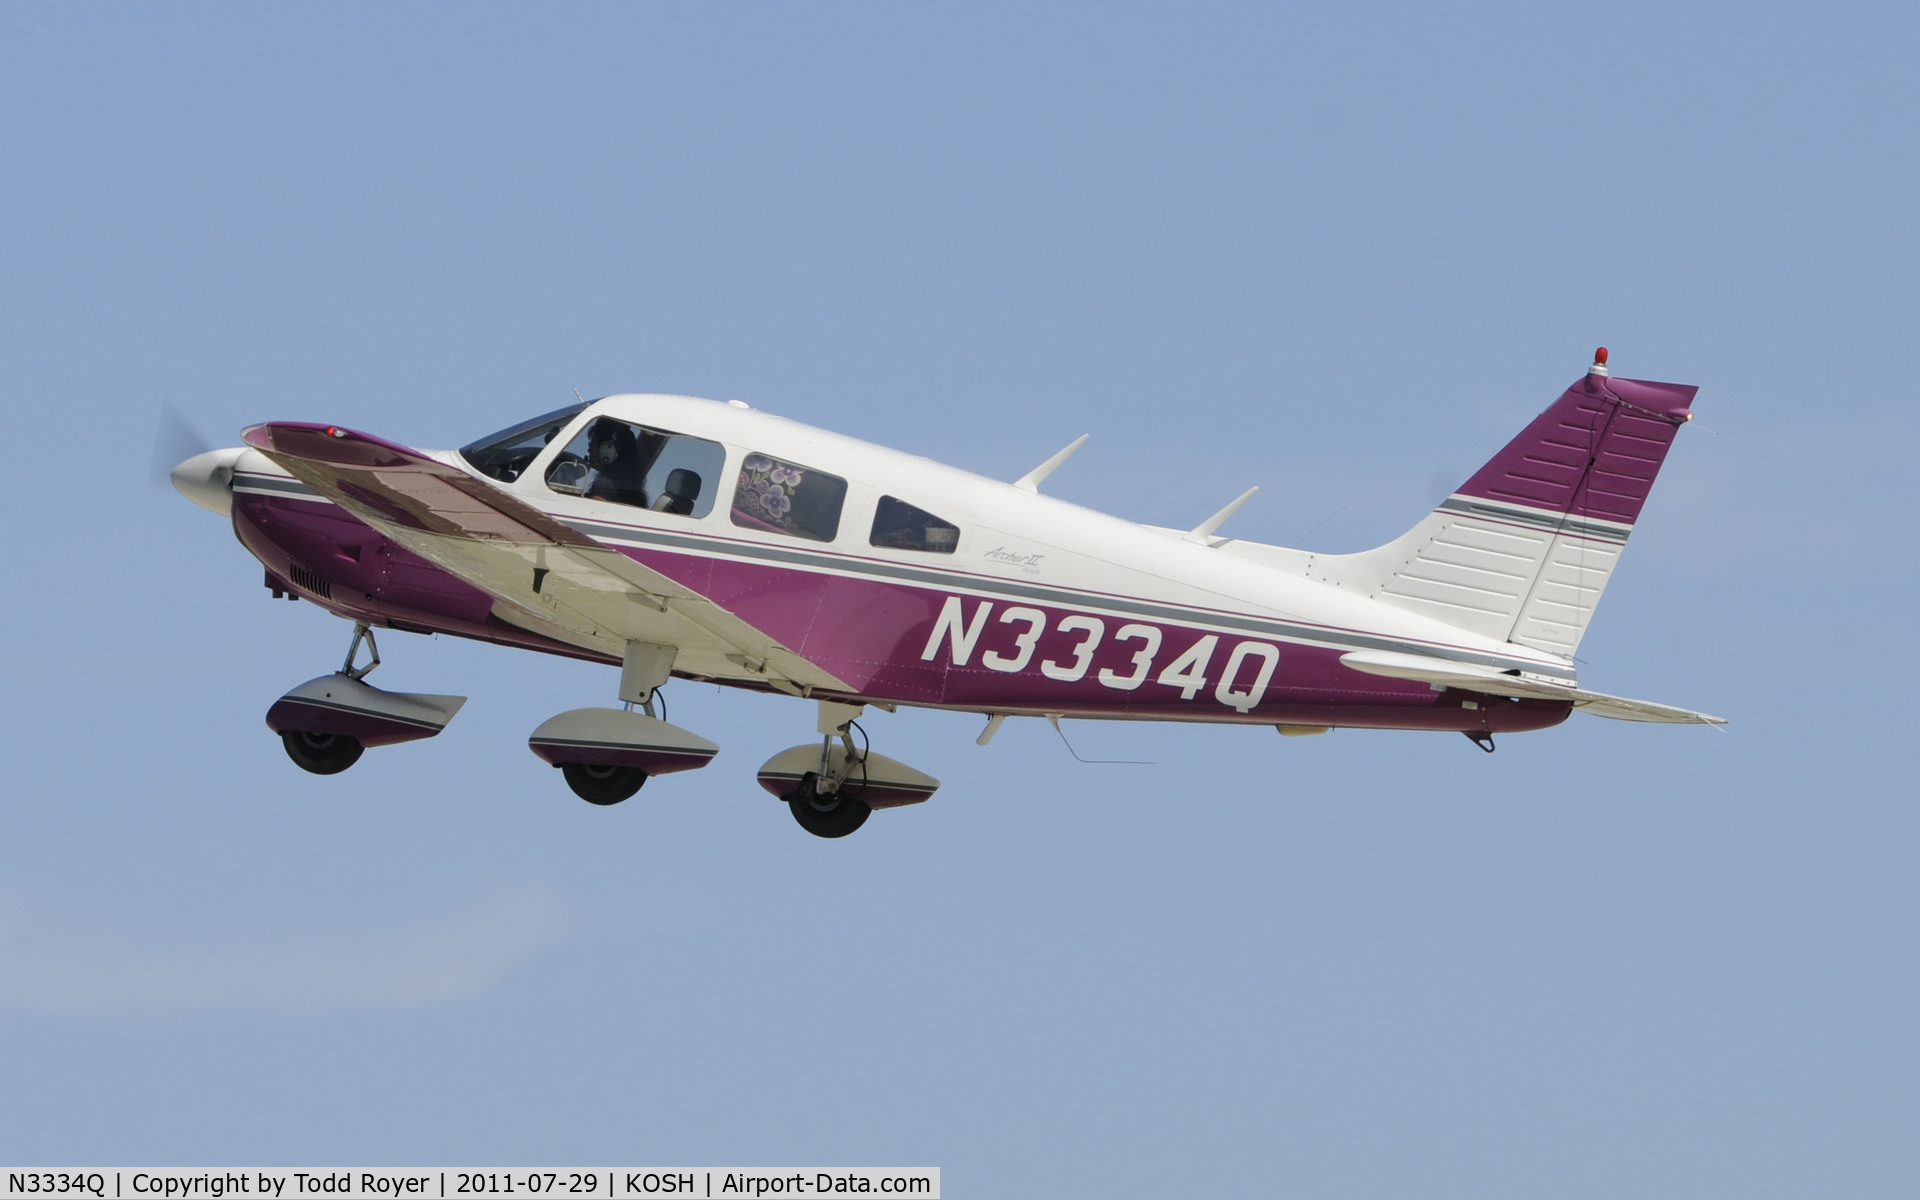 N3334Q, 1977 Piper PA-28-181 C/N 28-7790449, AIRVENTURE 2011